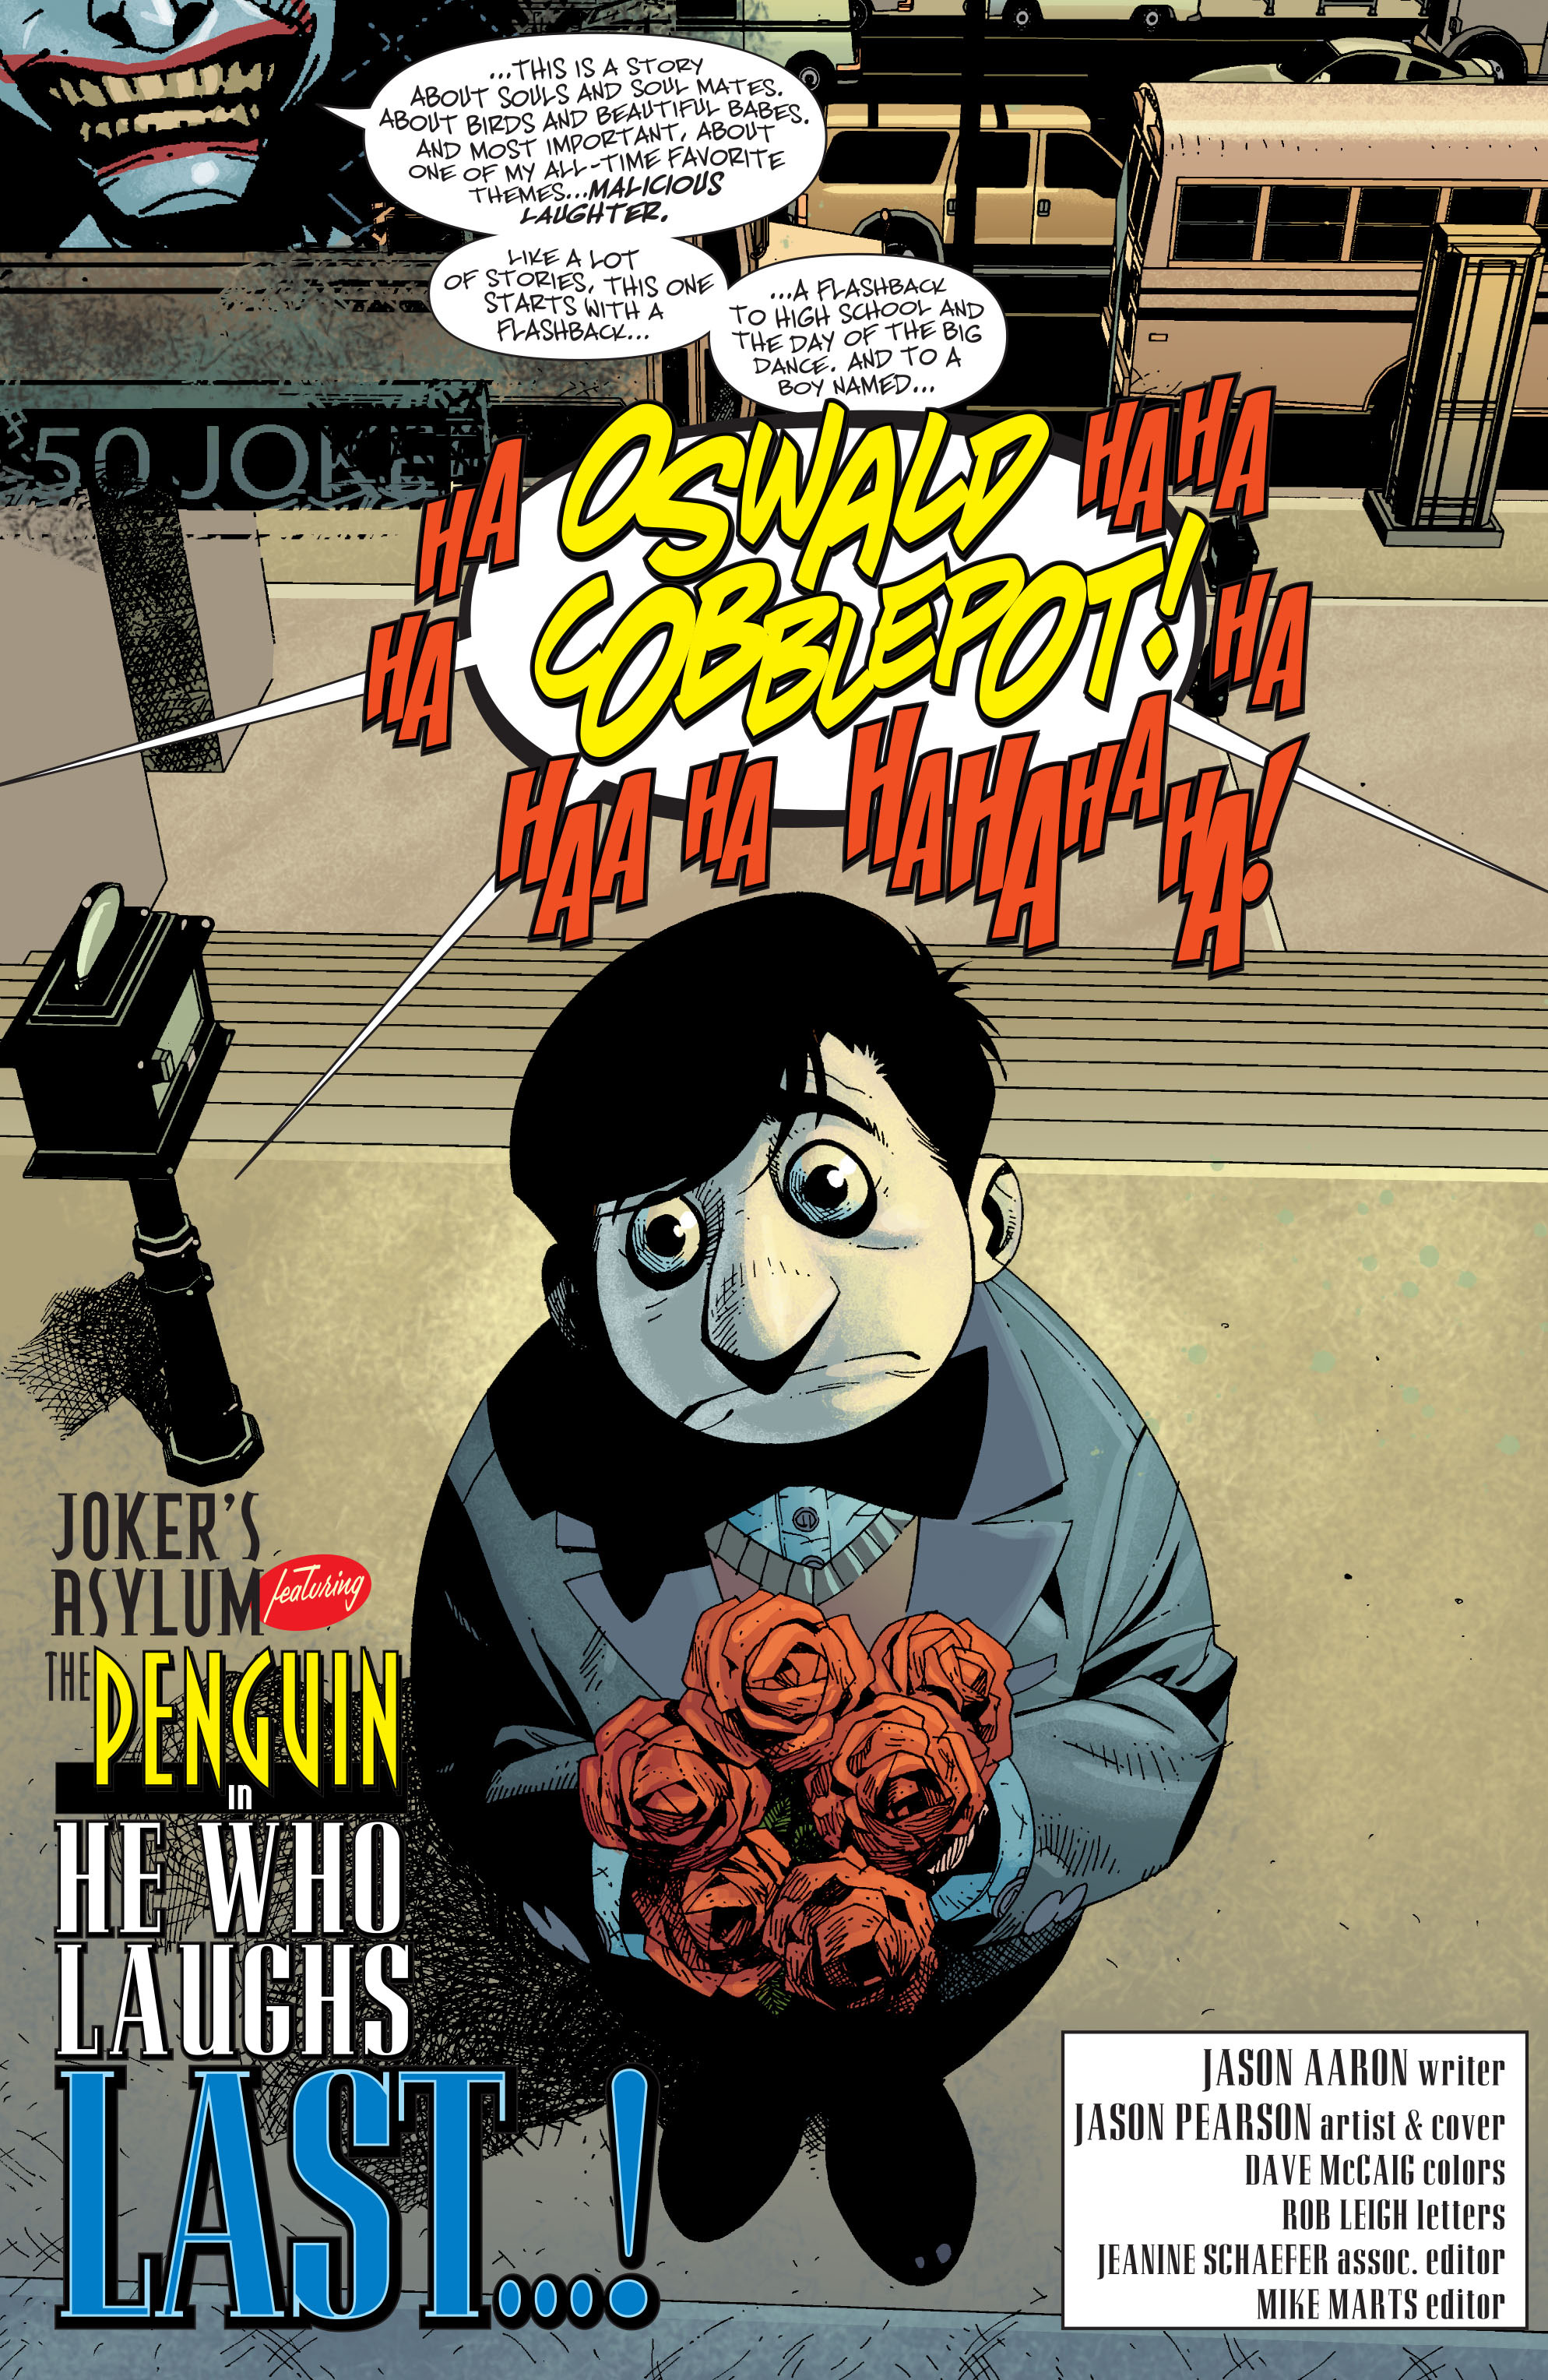 Read online Joker's Asylum: Penguin comic -  Issue # Full - 3